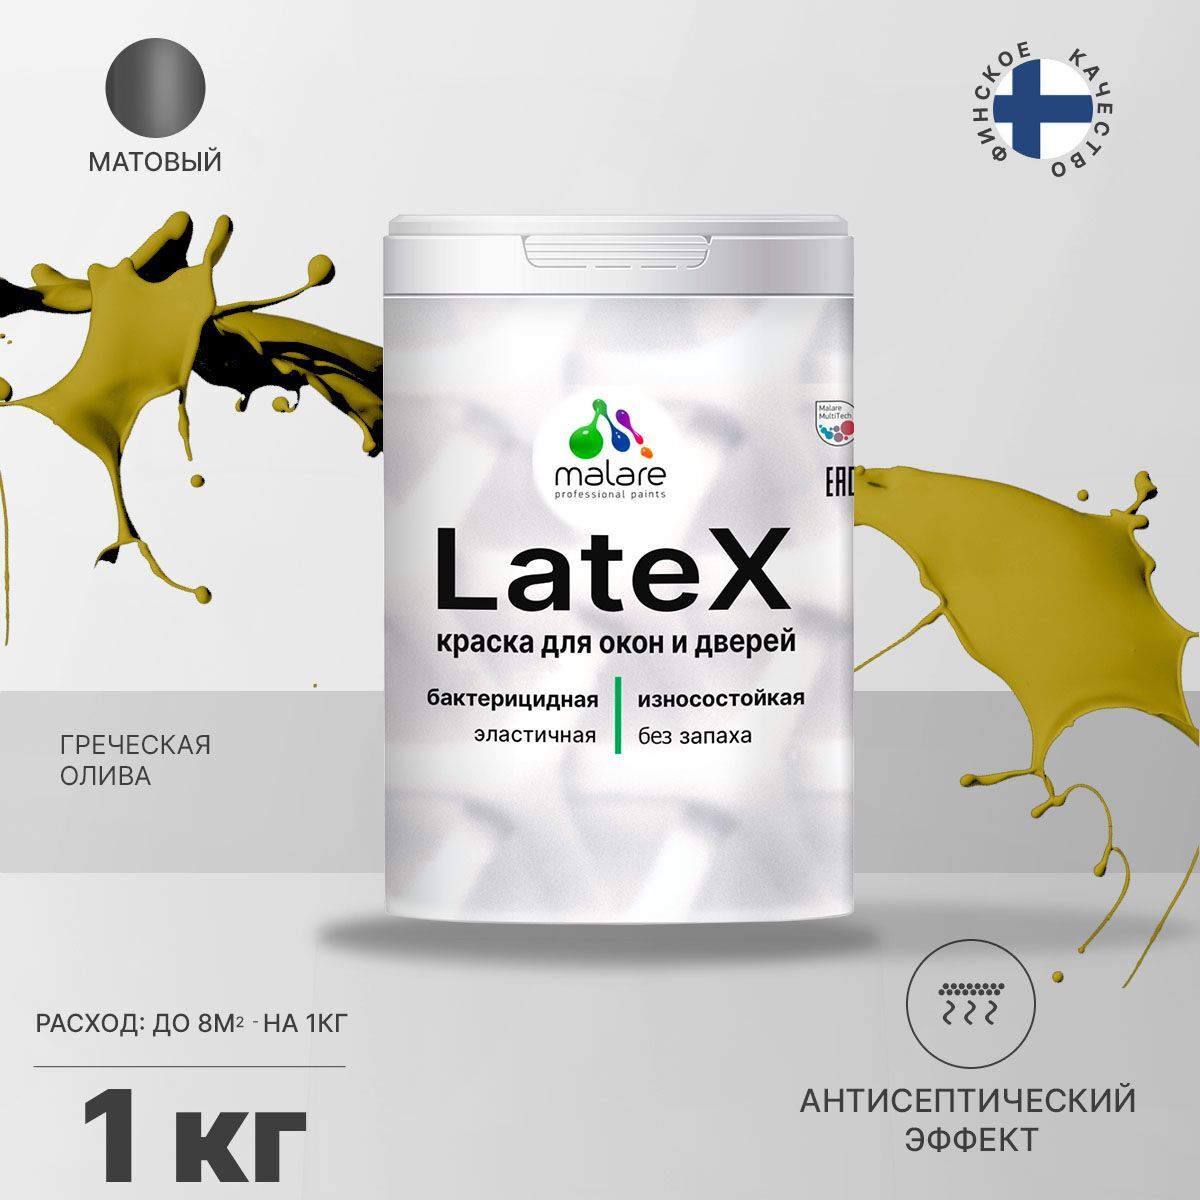 Краска Malare Latex Акриловая, Латексная, Полиуретановая, 1 кг греческая олива